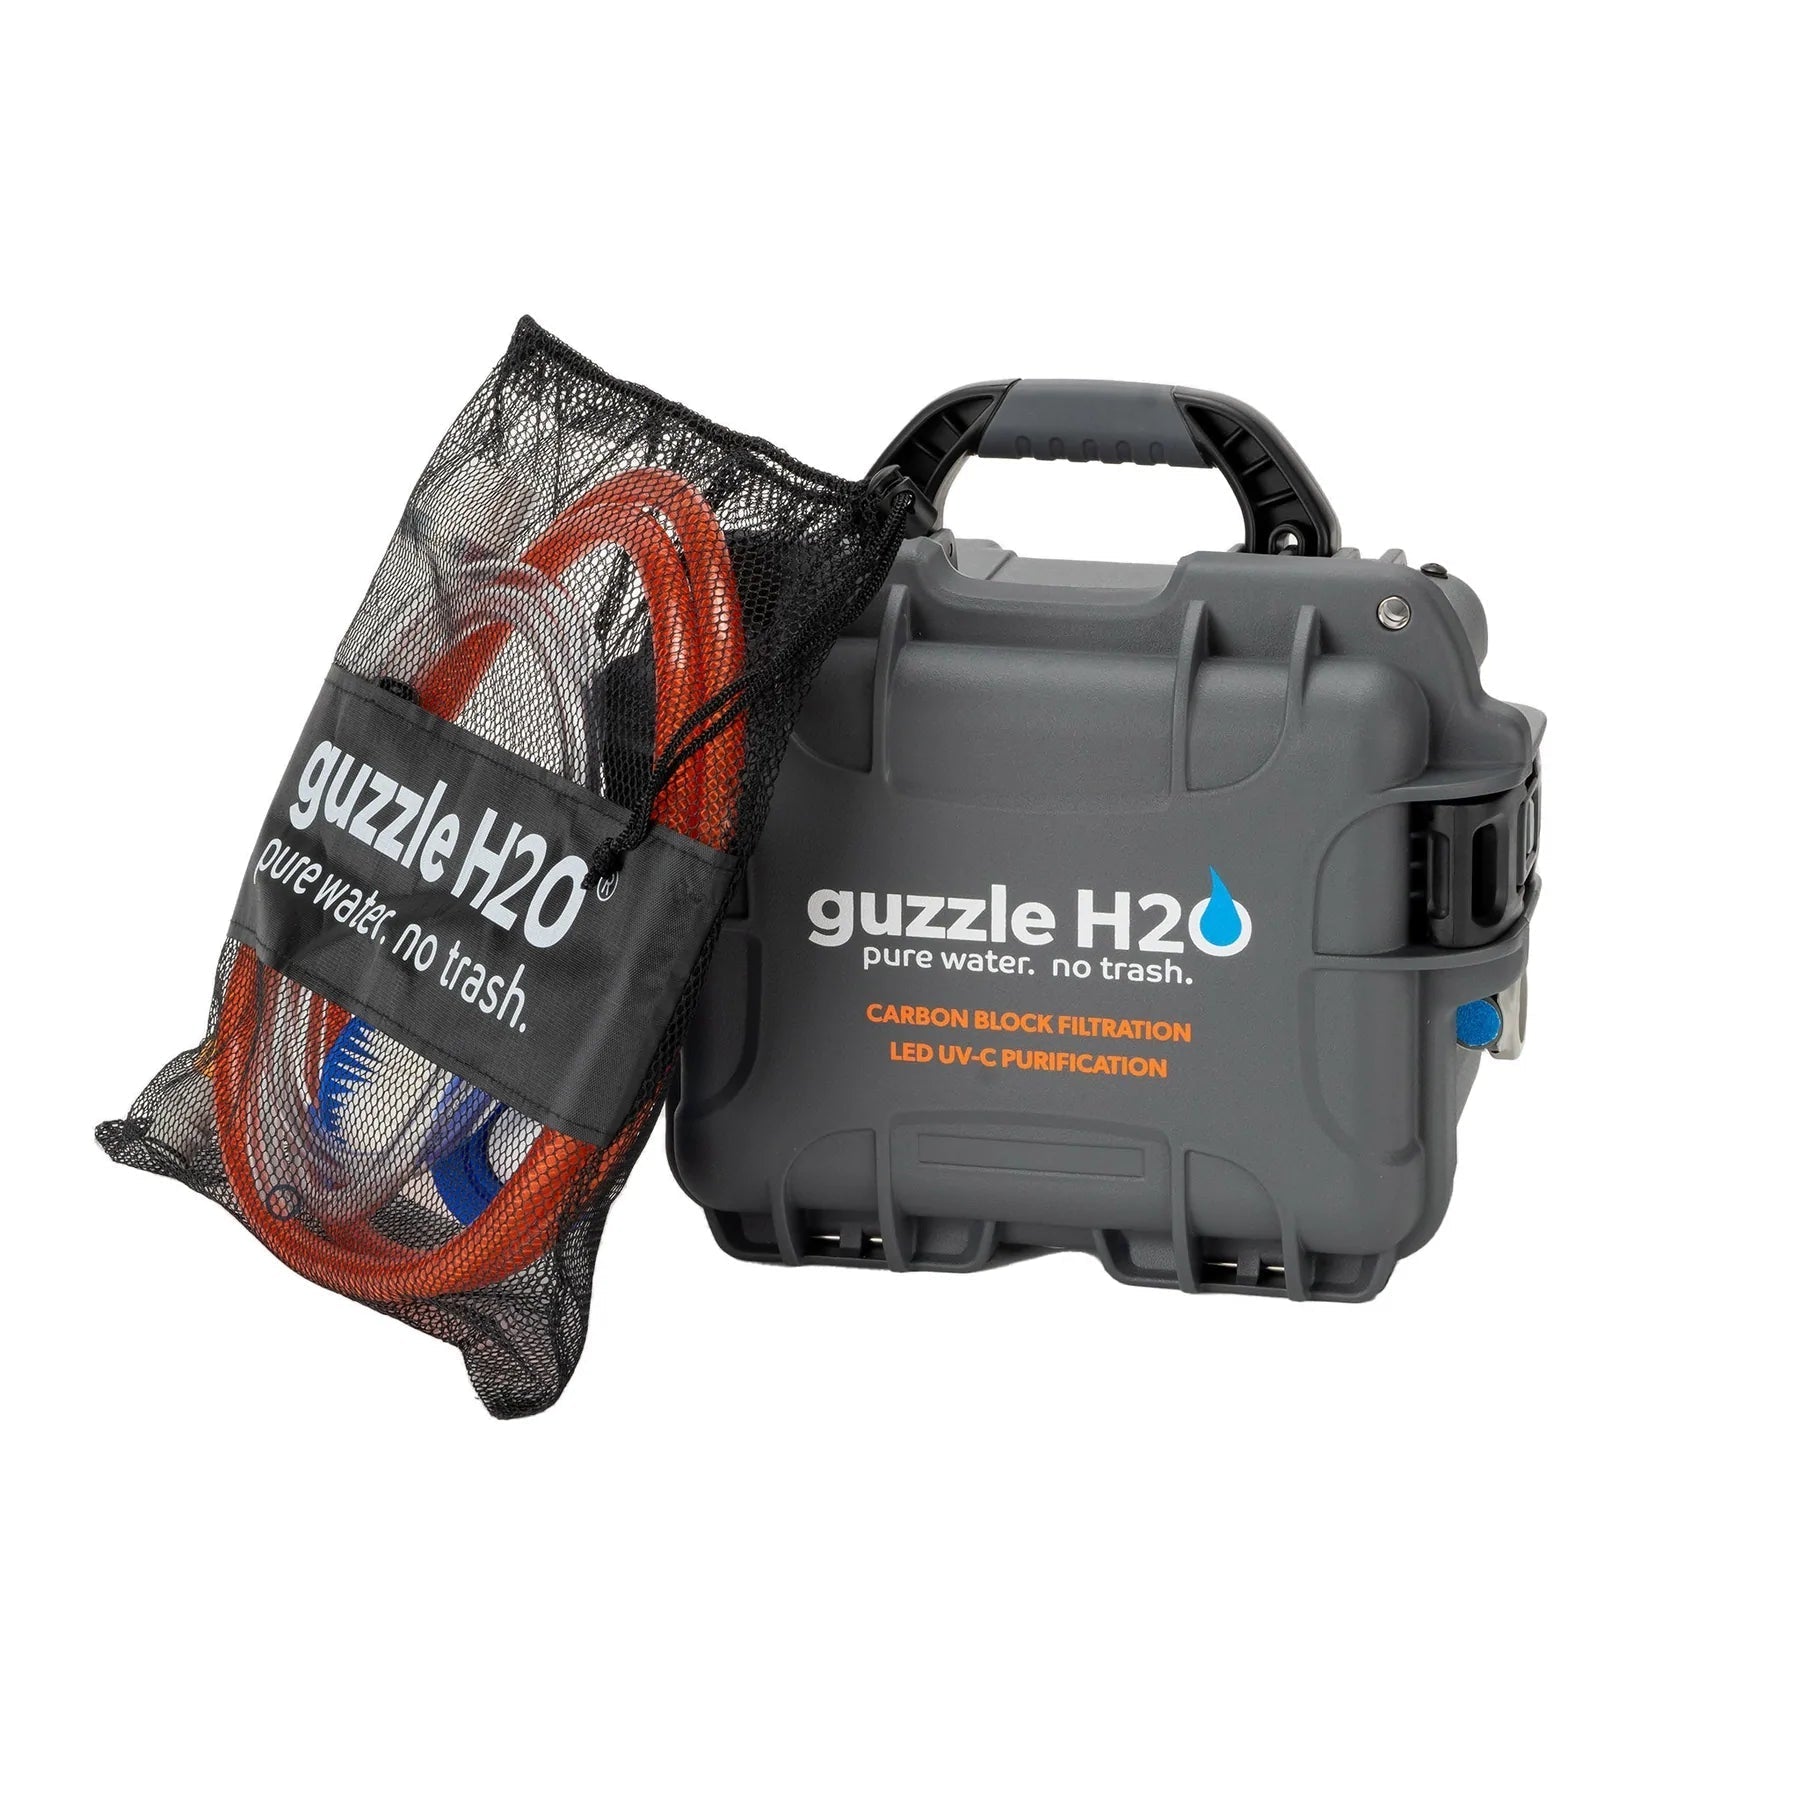 Guzzle H2O Overland Bundle